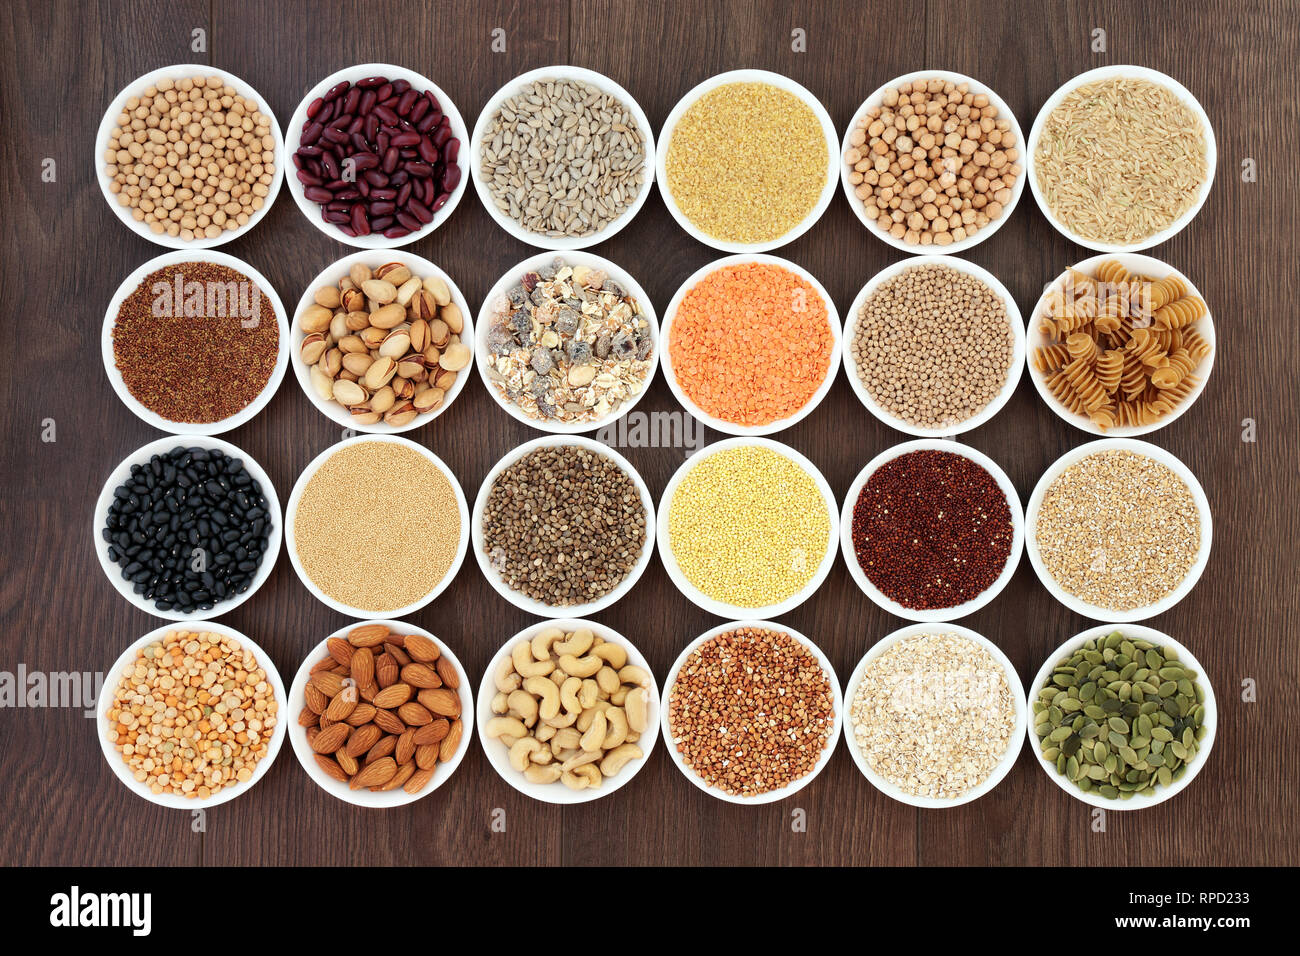 Vegano essiccato della salute alimentare con cereali, noci, semi, sos mix, cereali integrali, pasta e legumi. Foto Stock